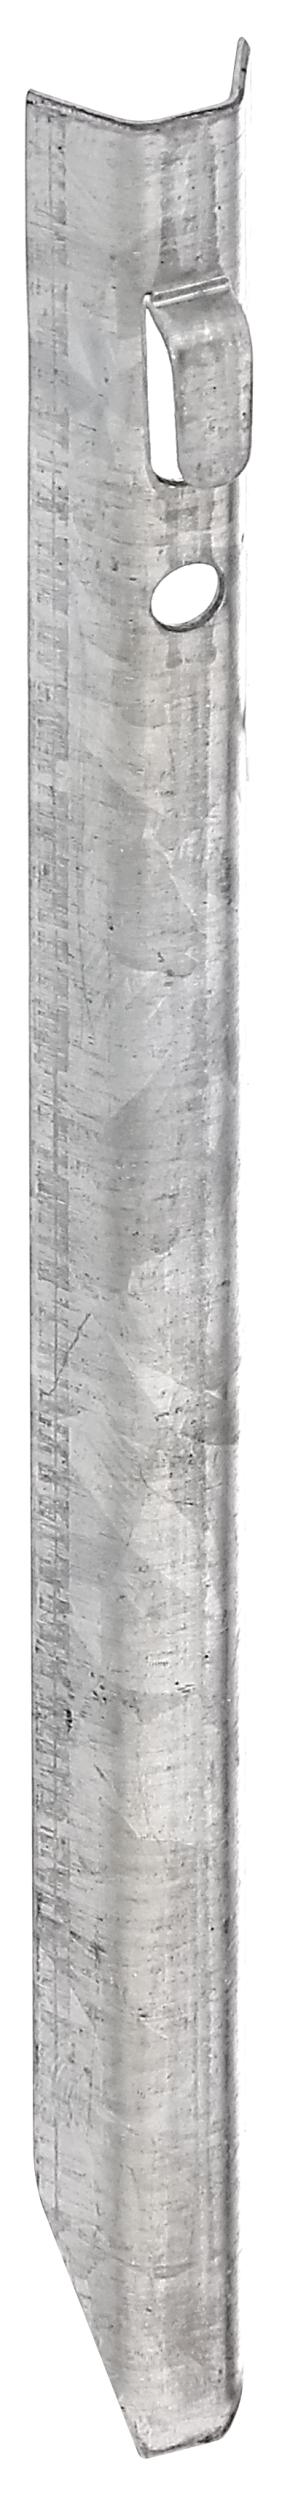 Alberts Erdanker, sendzimirverzinkt, 25 cm